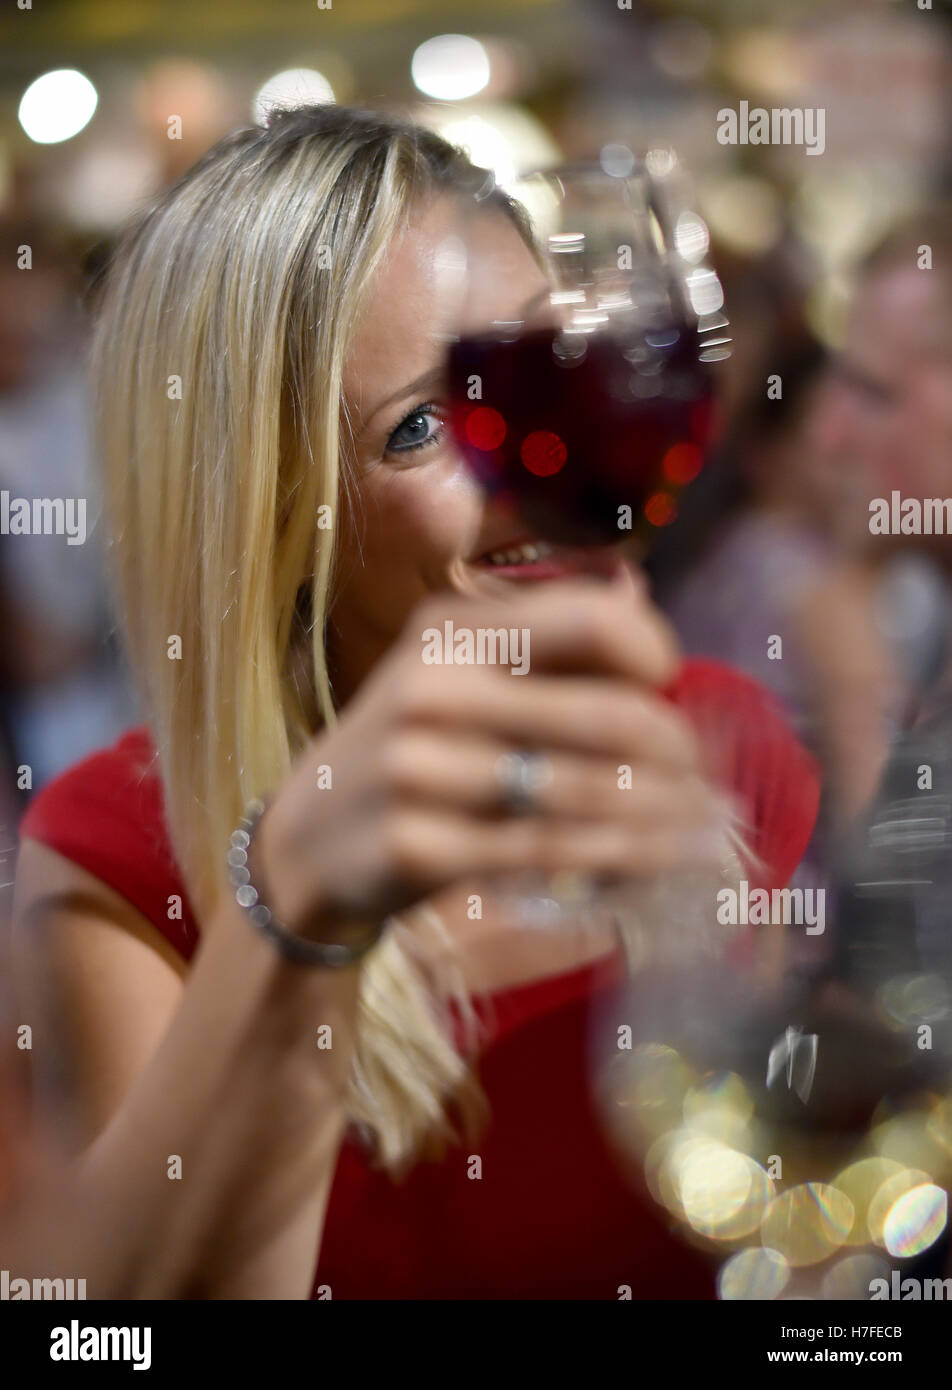 Femme de célébrer avec un verre de vin, Allemagne Banque D'Images